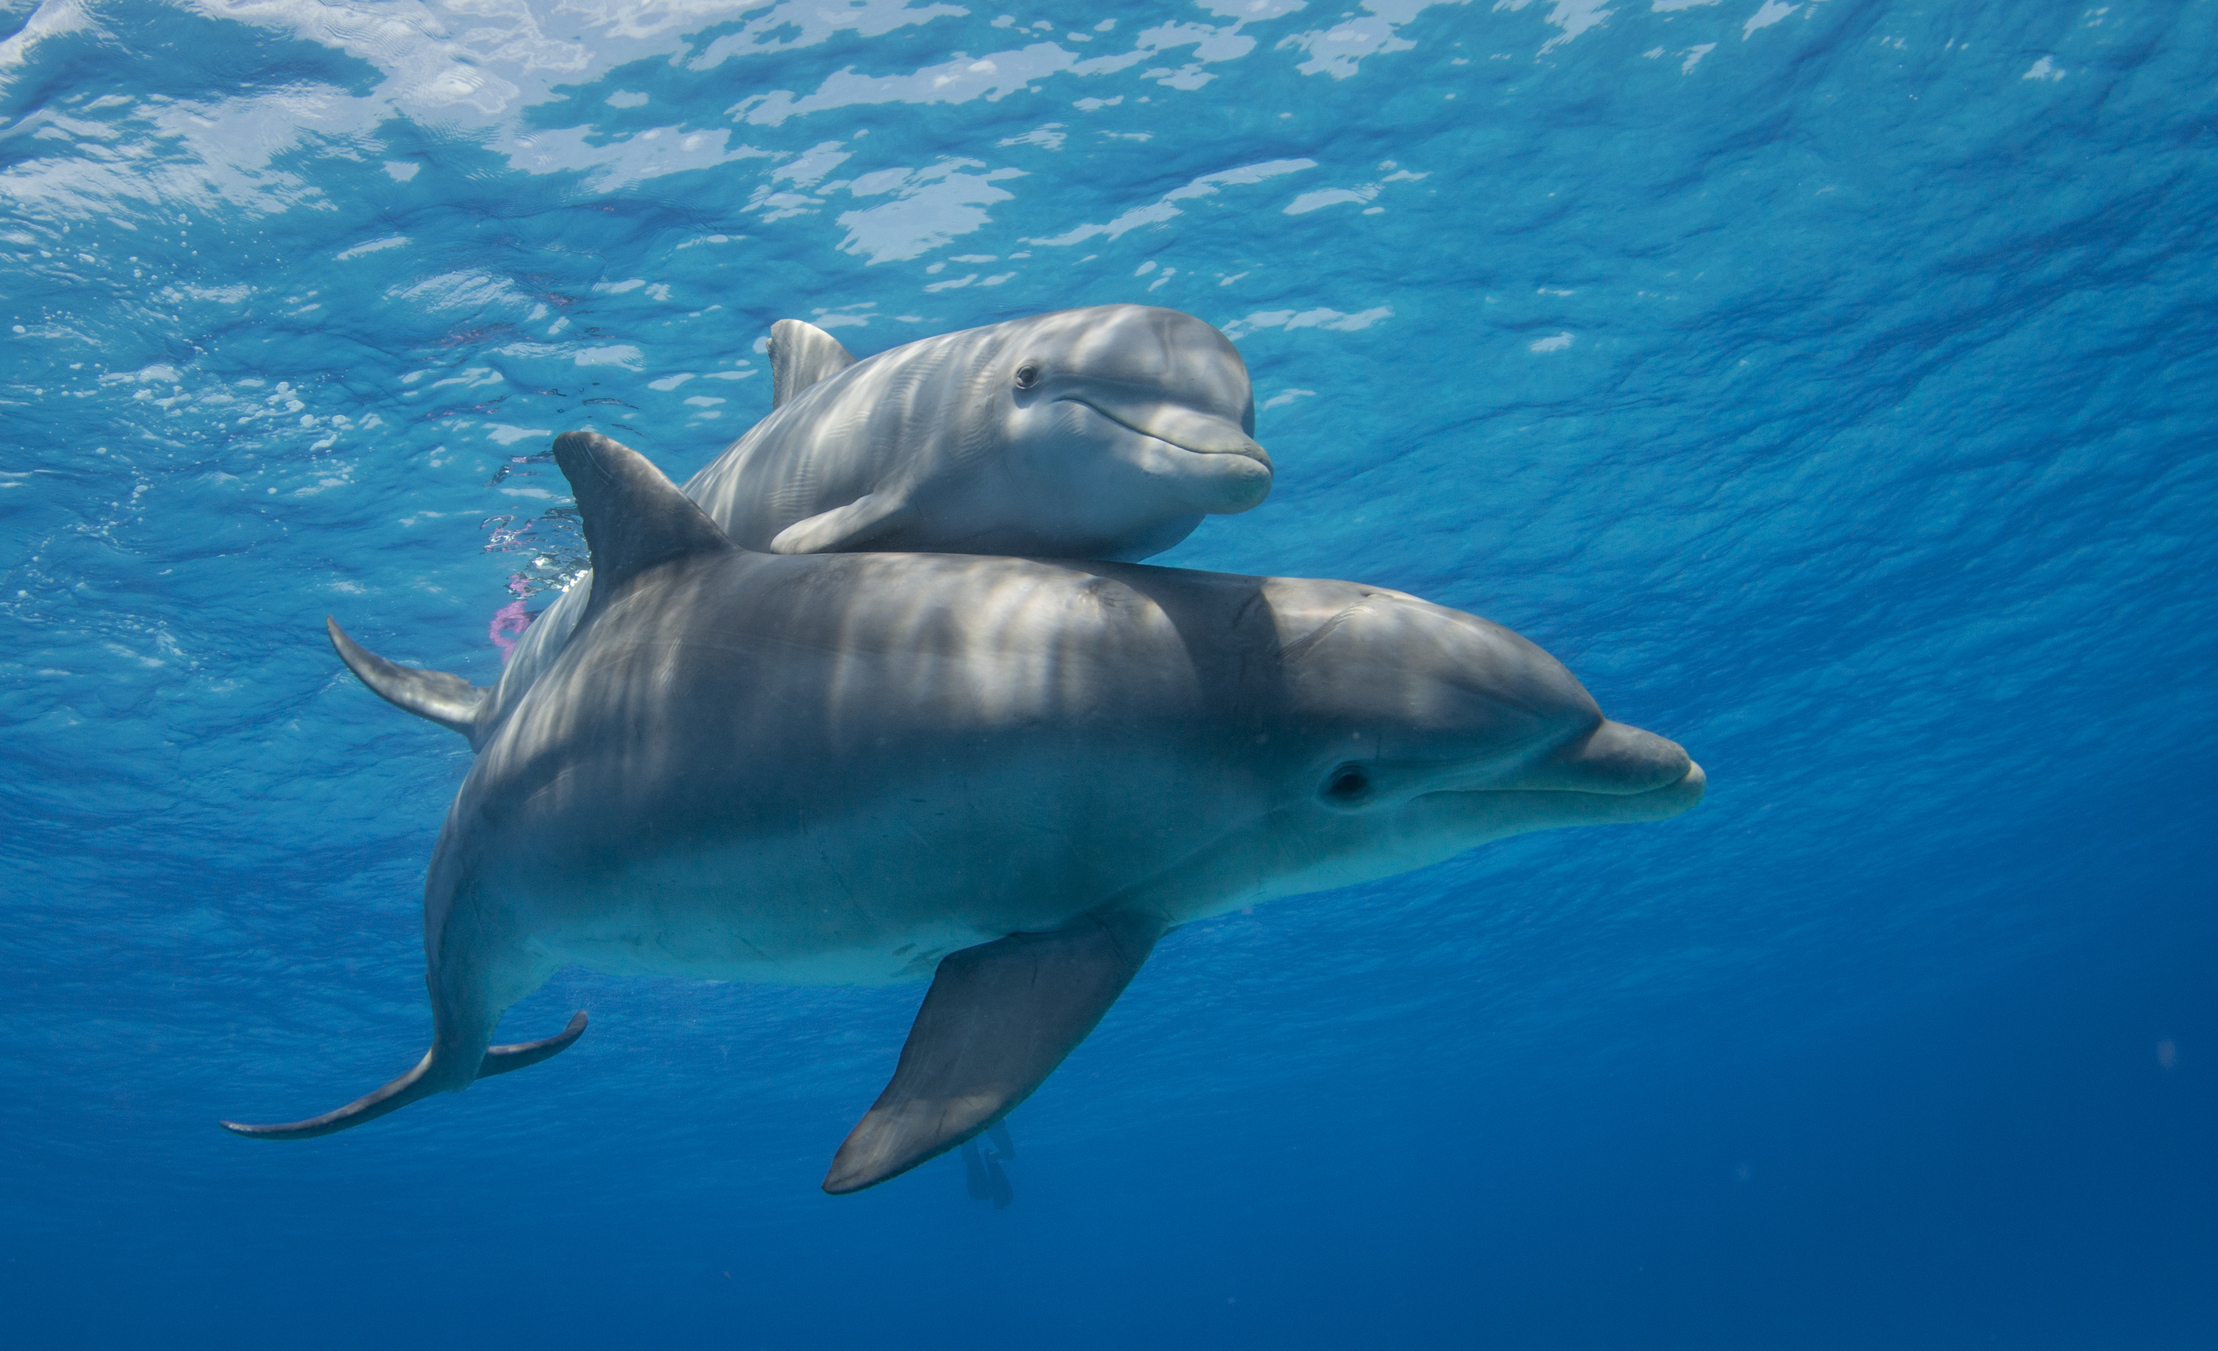 EFEMÉRIDES MUNDIALES! Día Mundial del Ebook o Libro Electrónico y de los  Delfines en Cautiverio #4Jul - Noticia al Minuto